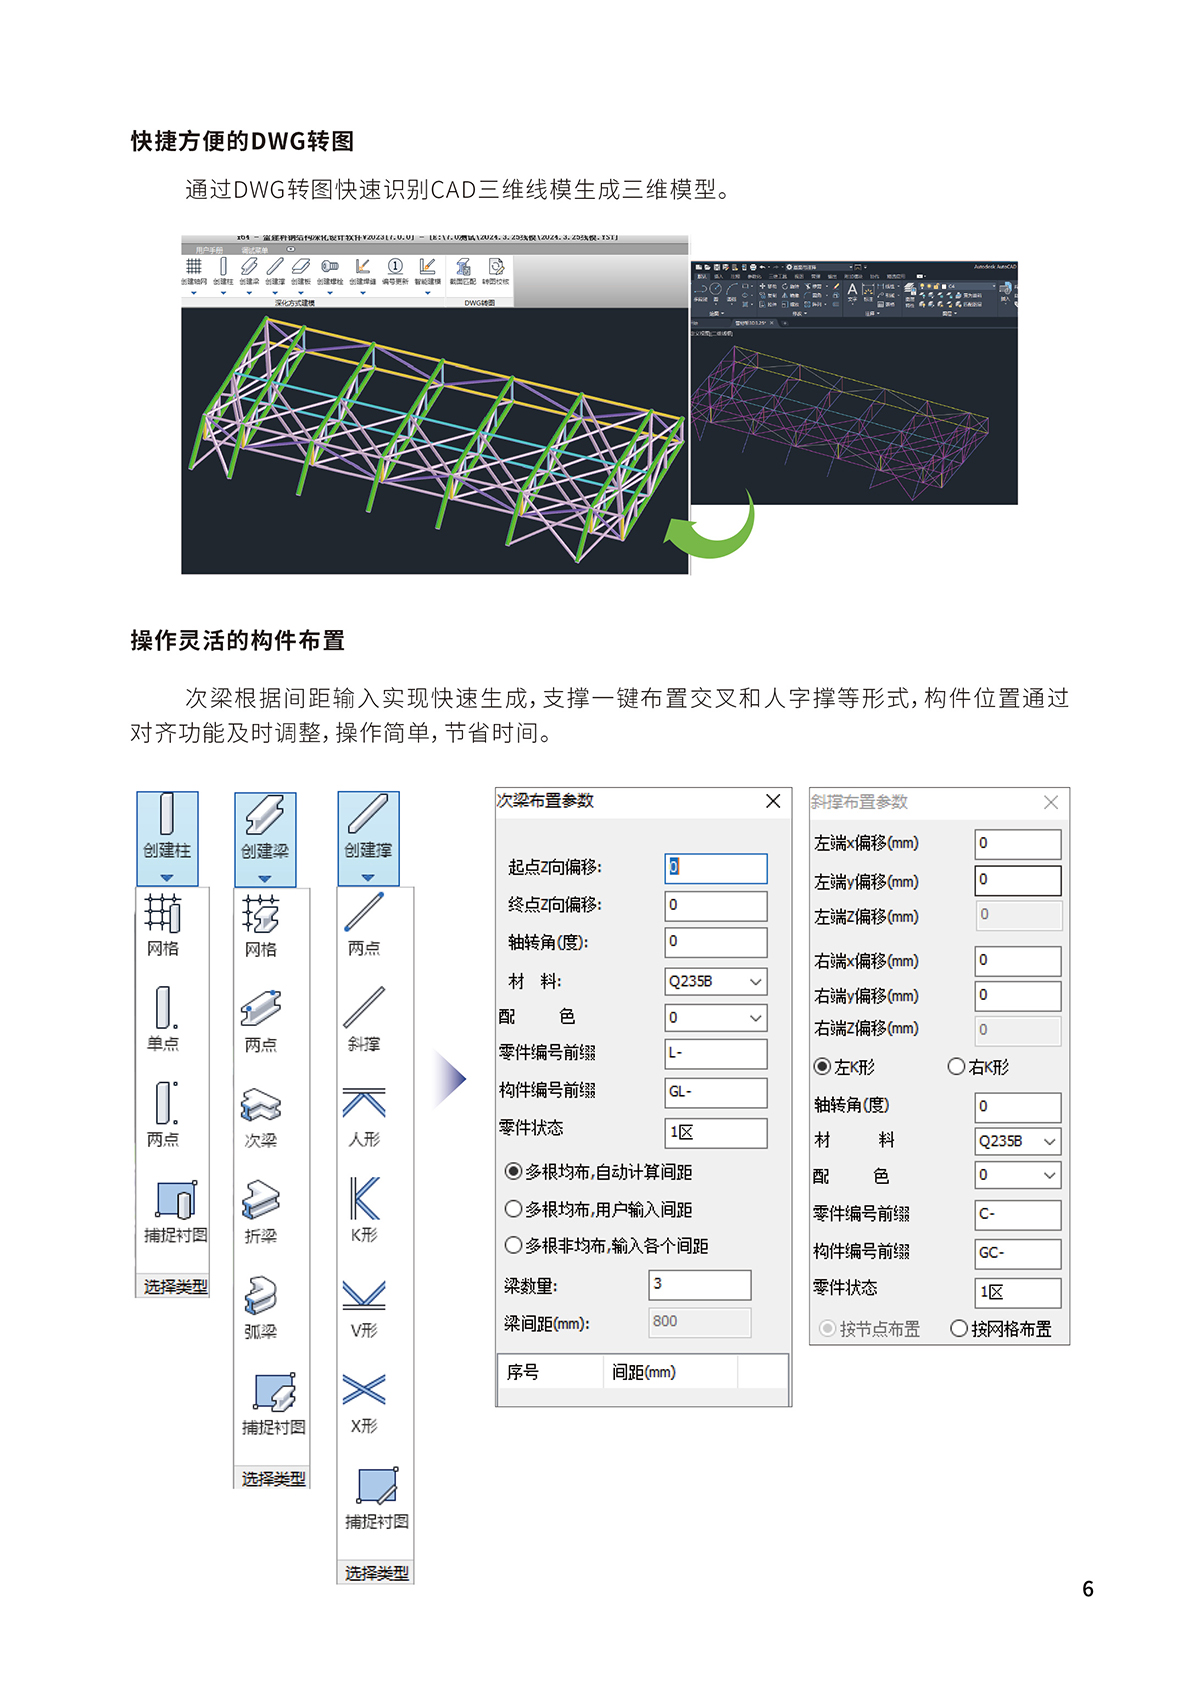 钢结构深化设计软件Y-ST-4_02.jpg